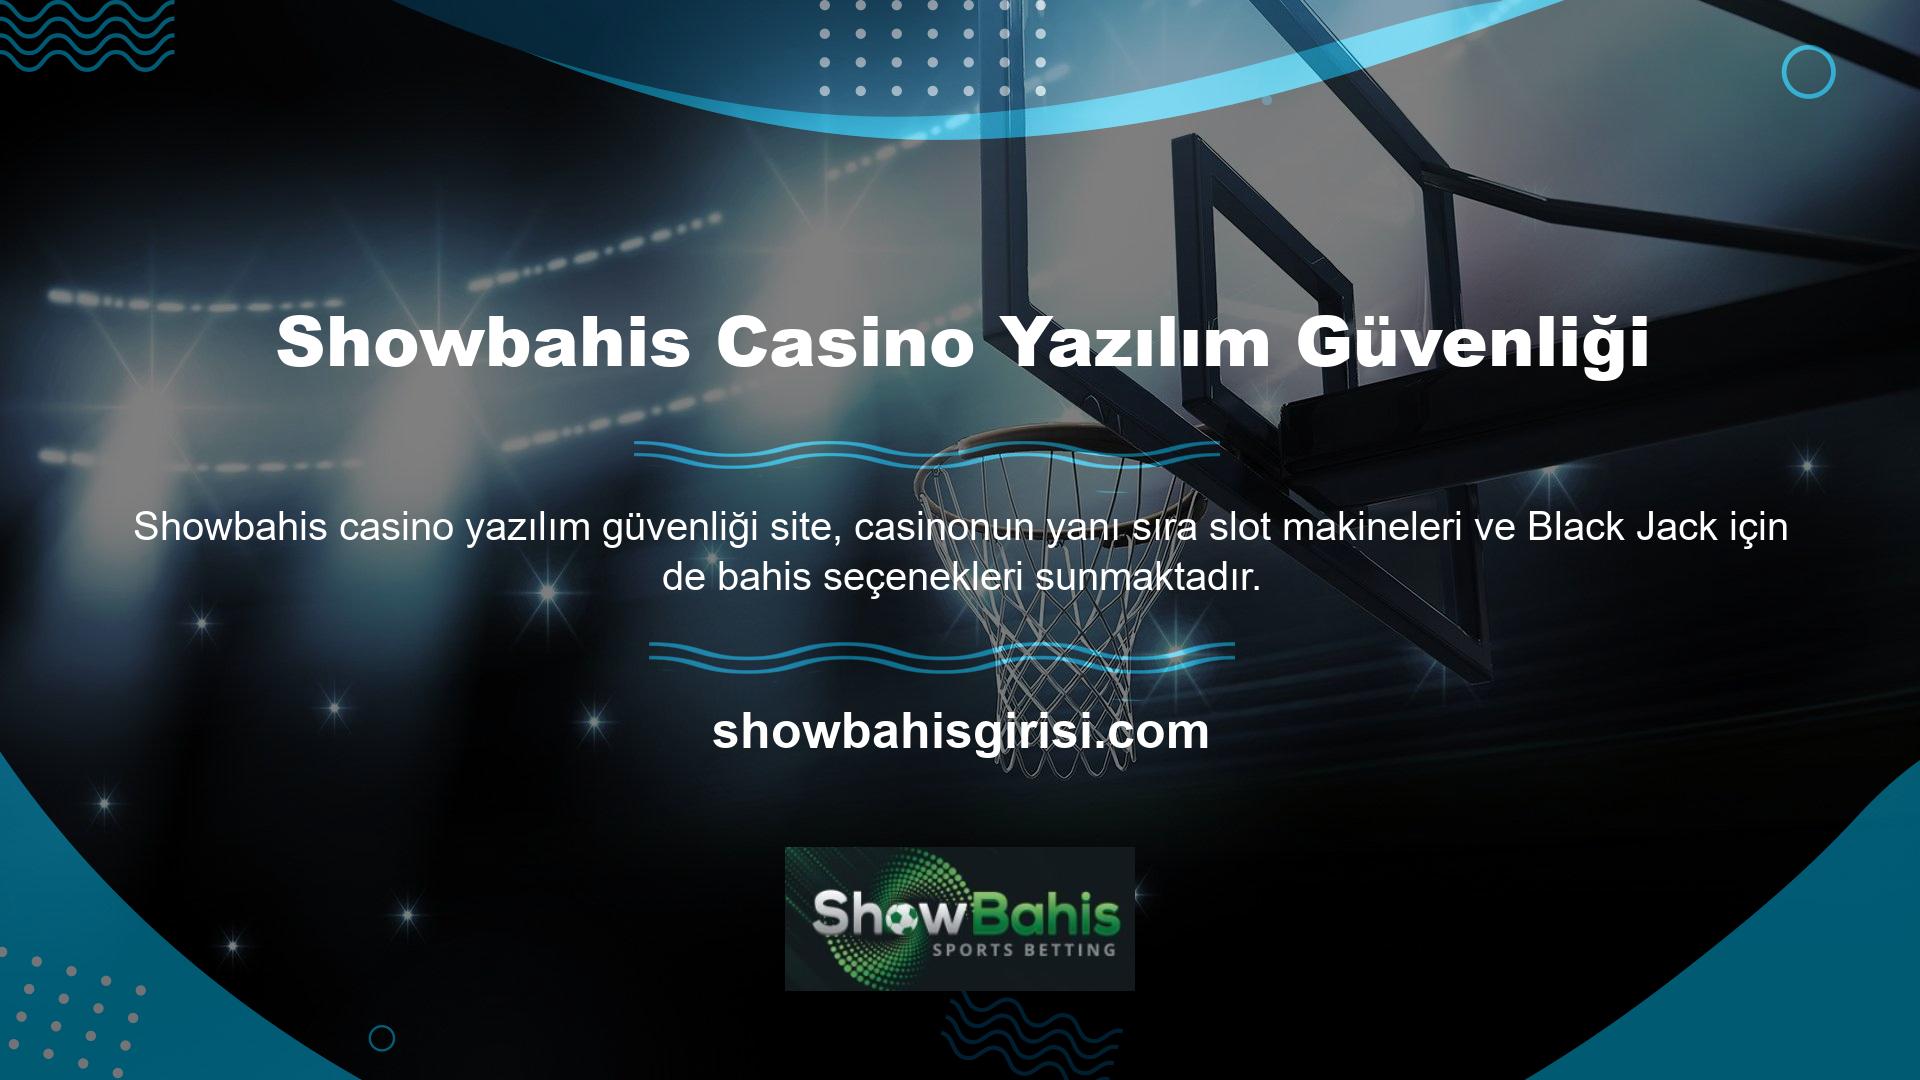 Bahisçiler, Showbahis casino yazılımı güvenlik giriş adreslerini kullanarak siteye erişebilirler